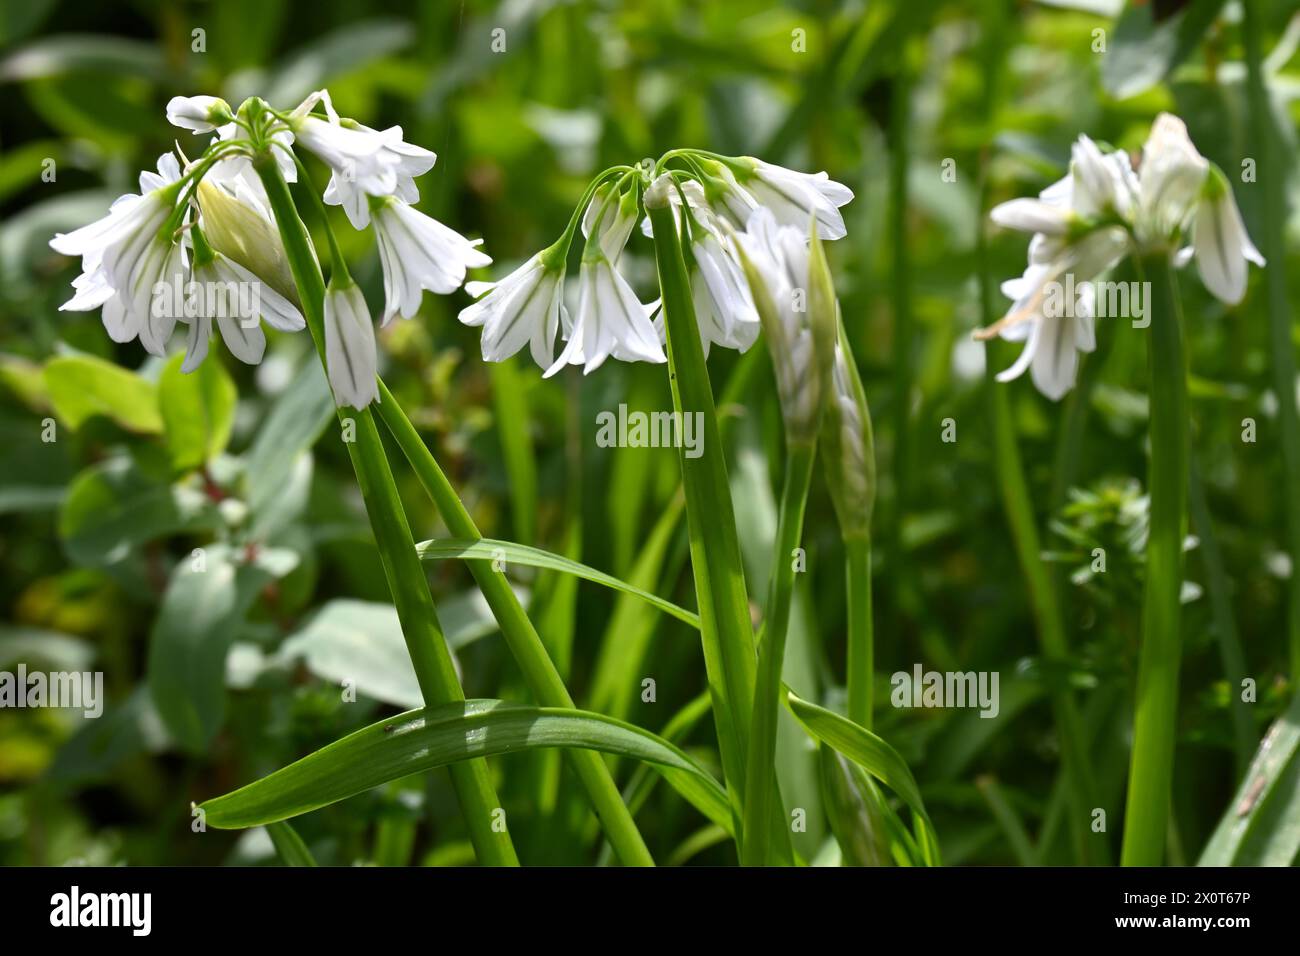 Zierliche weiße Frühlingsblumen von dreieckigem Lauch, auch bekannt als wilder Knoblauch oder Allium triquetrum, der auf der britischen Wiese im April wächst Stockfoto